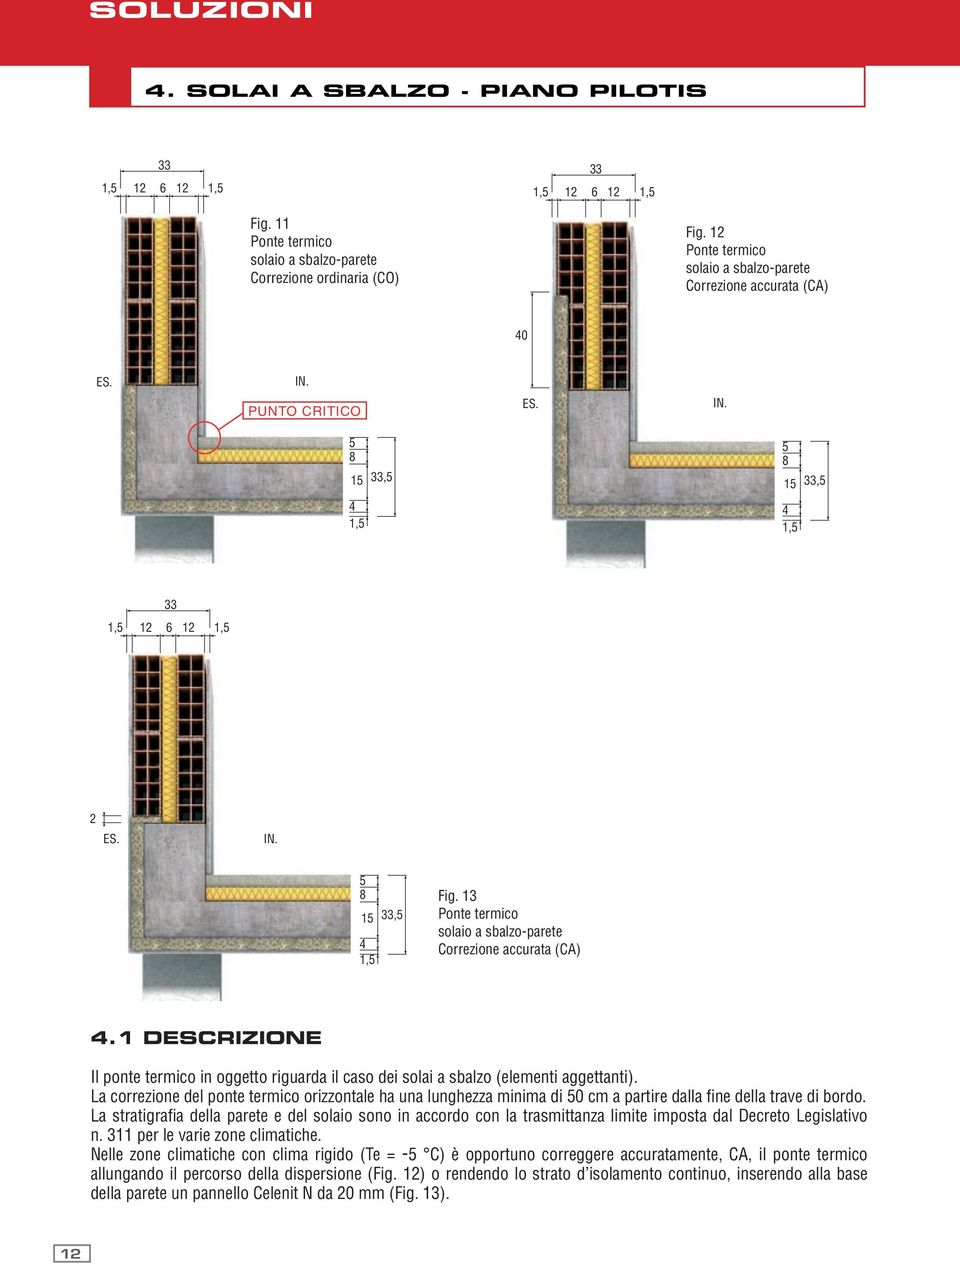 13 Ponte termico solaio a sbalzo-parete Correzione accurata (CA) 4.1 DESCRIZIONE Il ponte termico in oggetto riguarda il caso dei solai a sbalzo (elementi aggettanti).